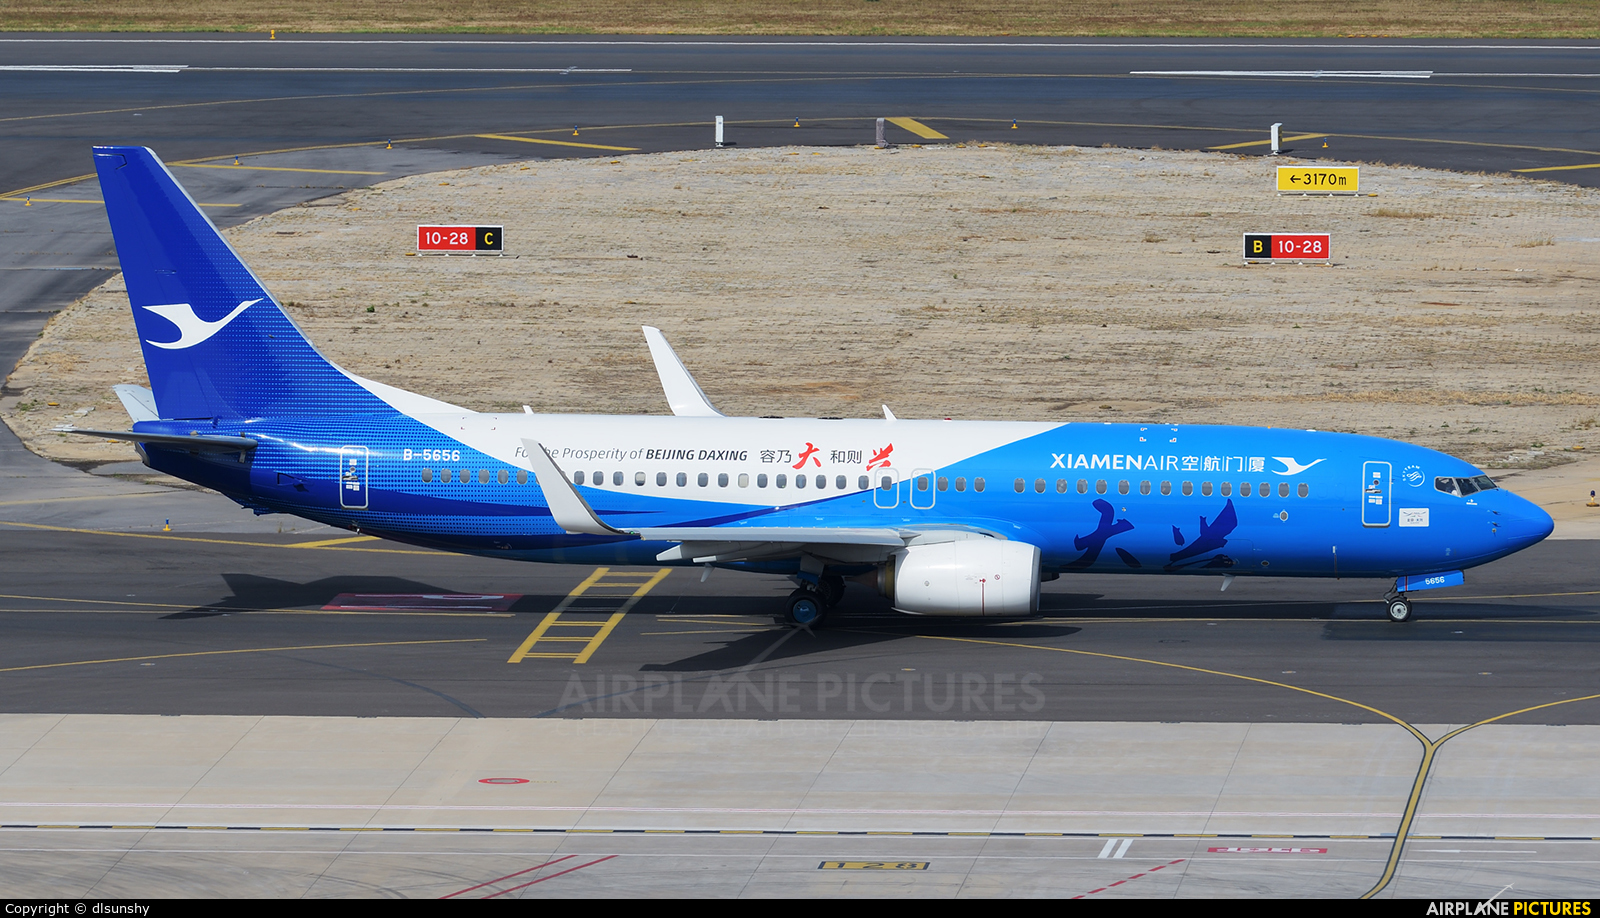 Xiamen Airlines B-5656 aircraft at Dalian Zhoushuizi Int'l